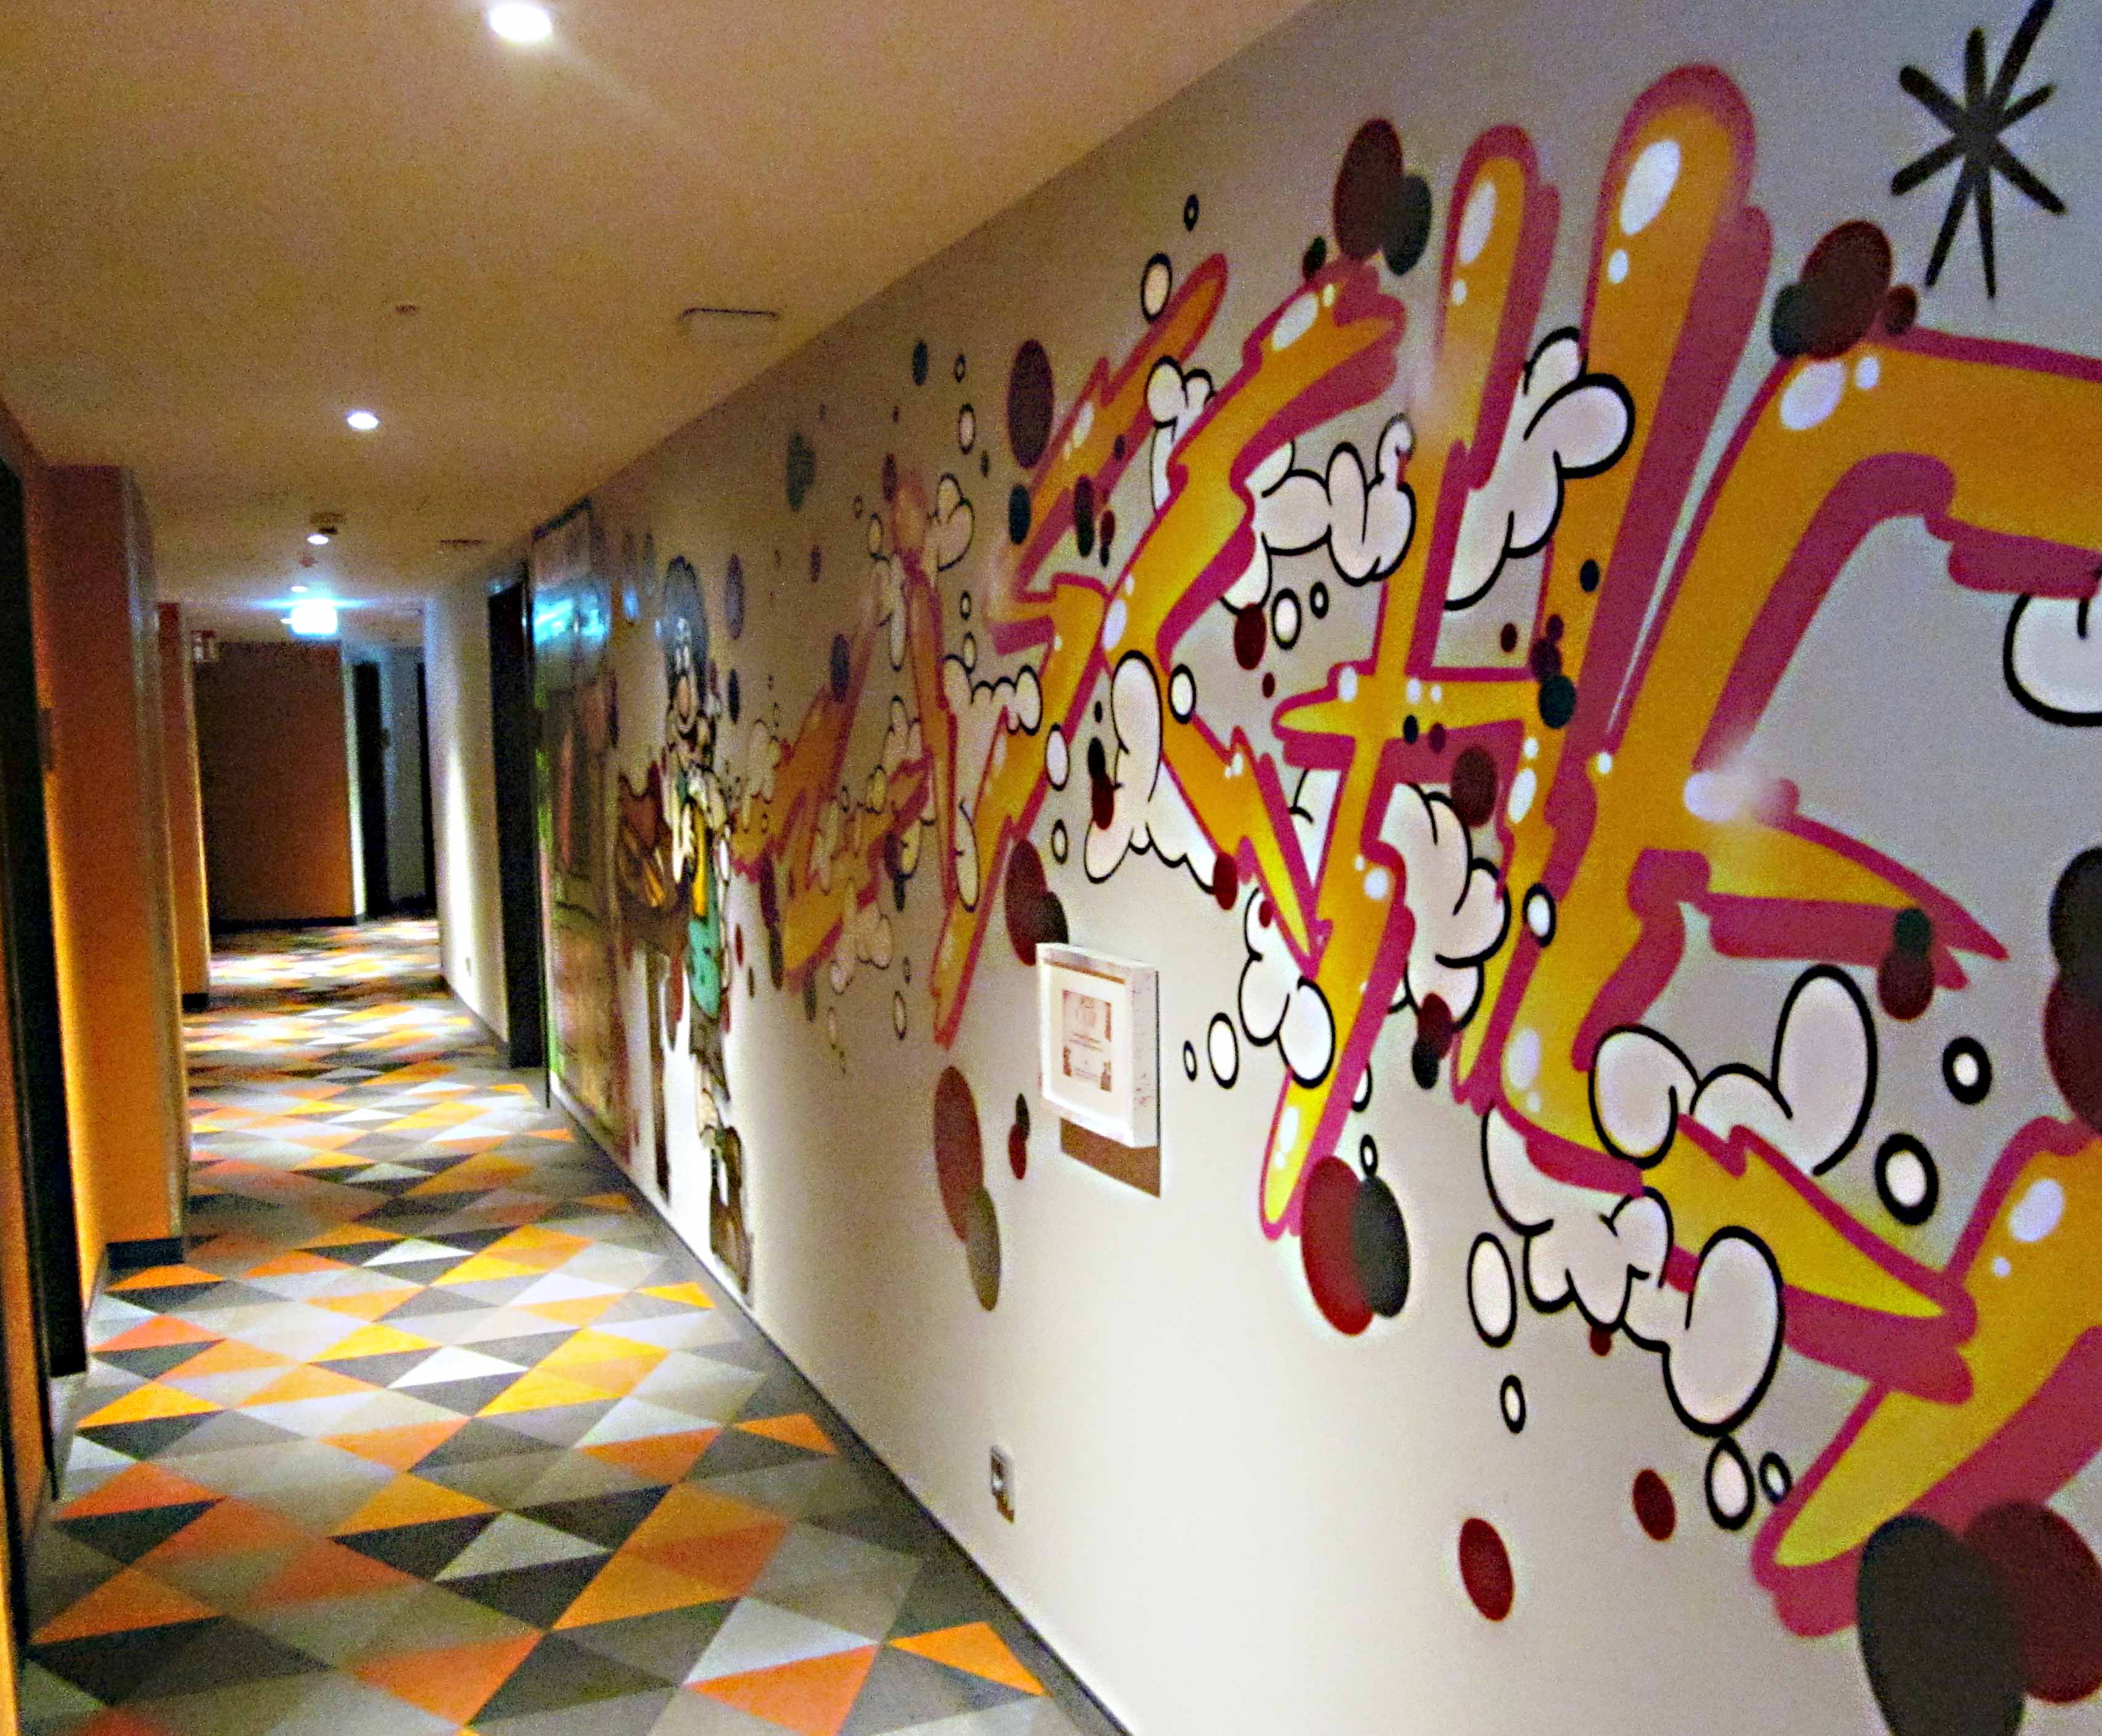 Poppig-schrill sind auch die Wände und Bodenbeläge in den Hotelgängen gestaltet.